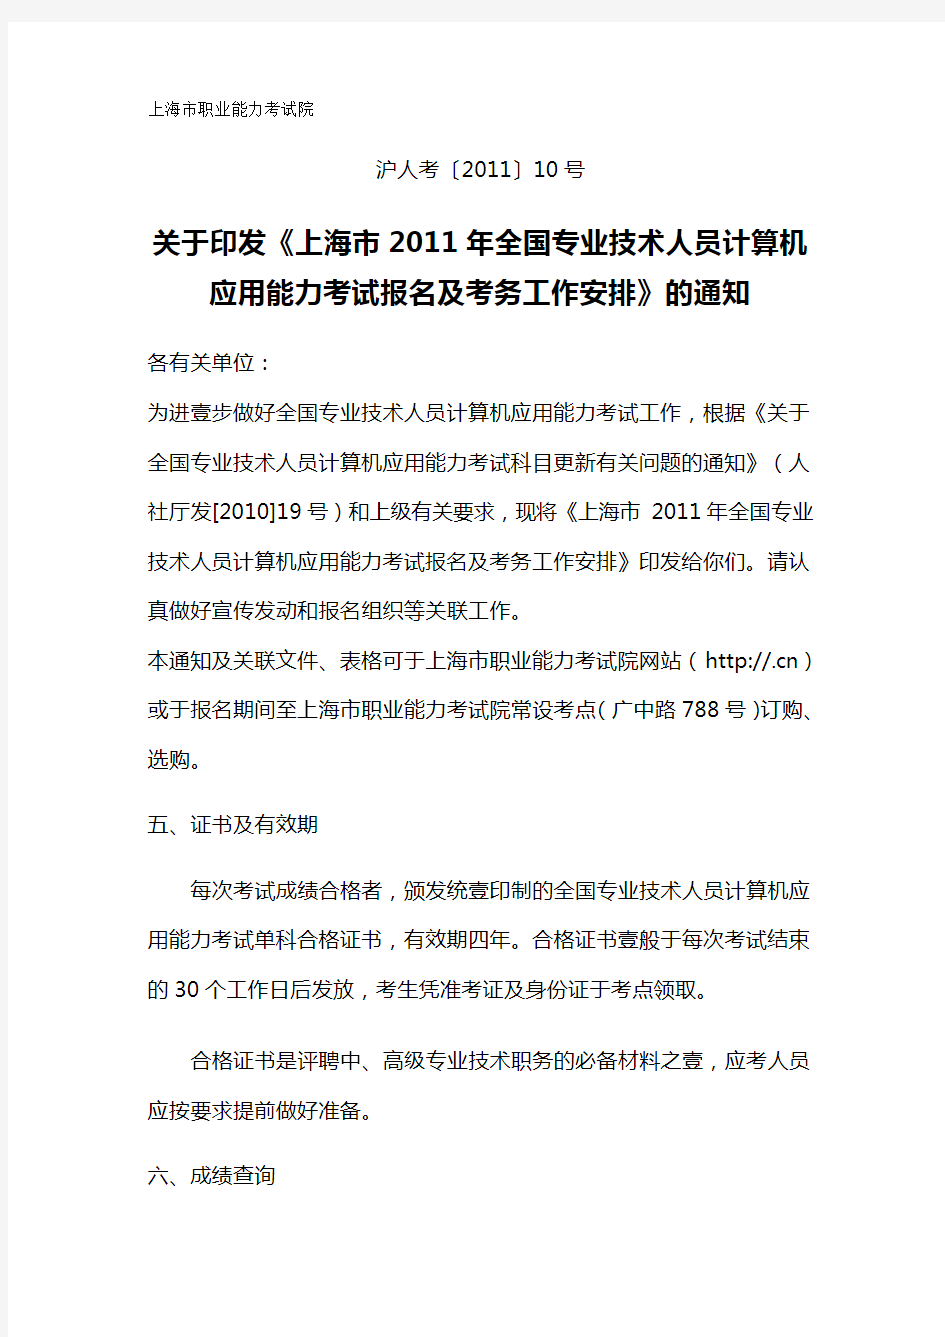 员工管理上海市年全国专业技术人员计算机应用能力考试报名及考务工作安排